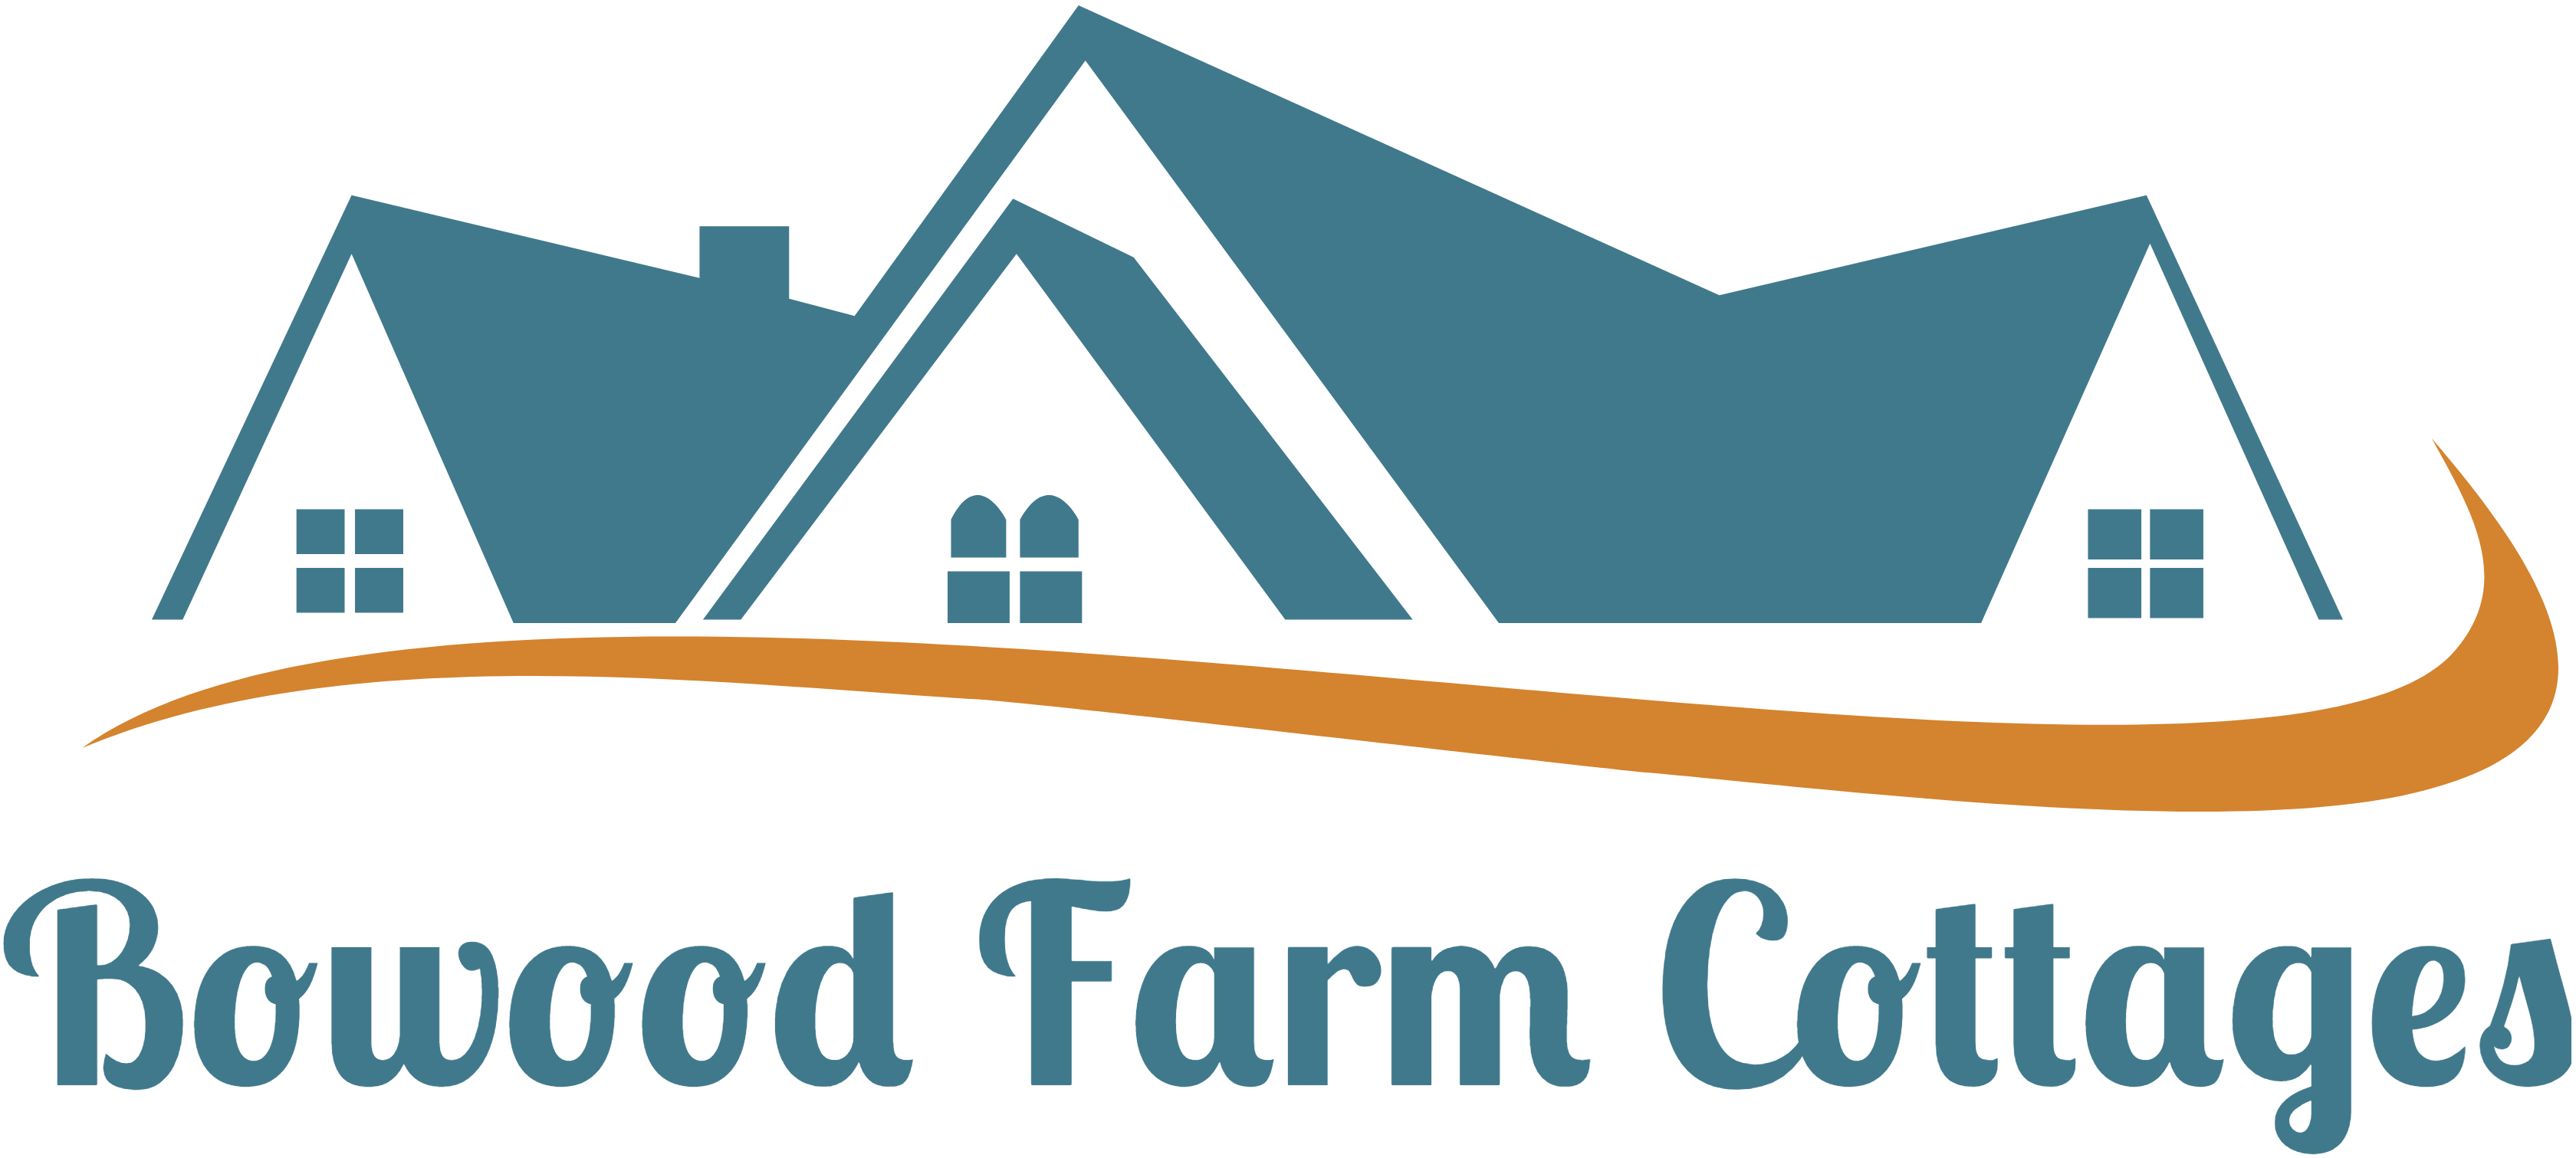 Bowood Farm Cottages logo